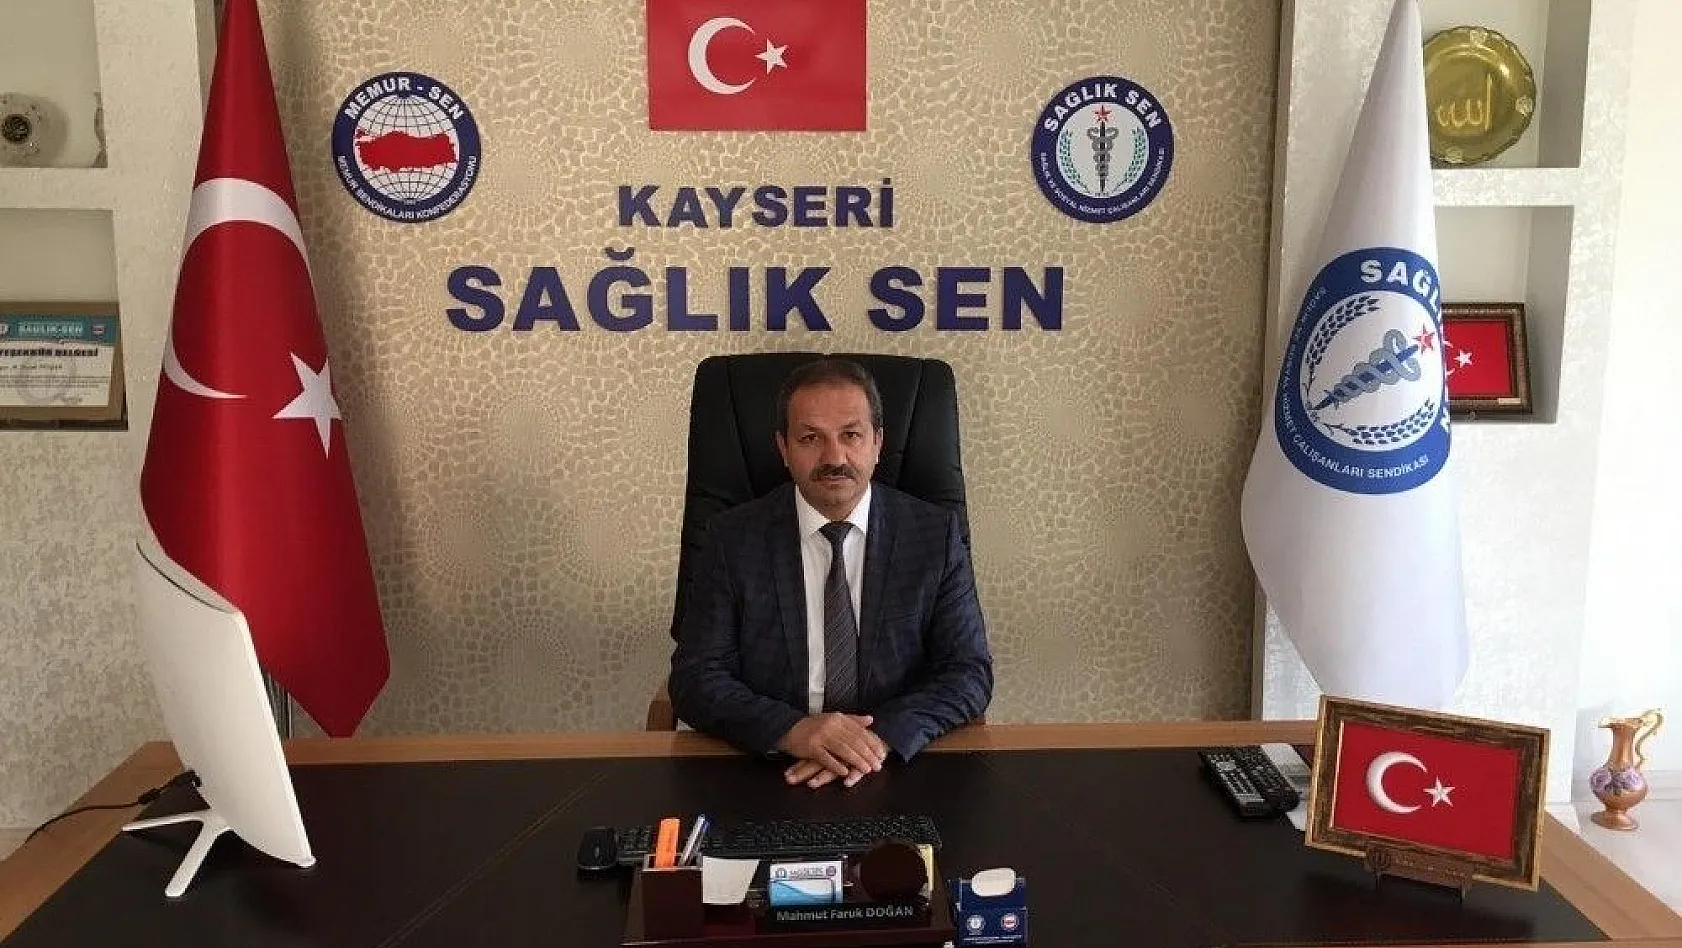 Sağlık Sen Kayseri Şube Başkanı Mahmut Faruk Doğan Ankara Yolcusu